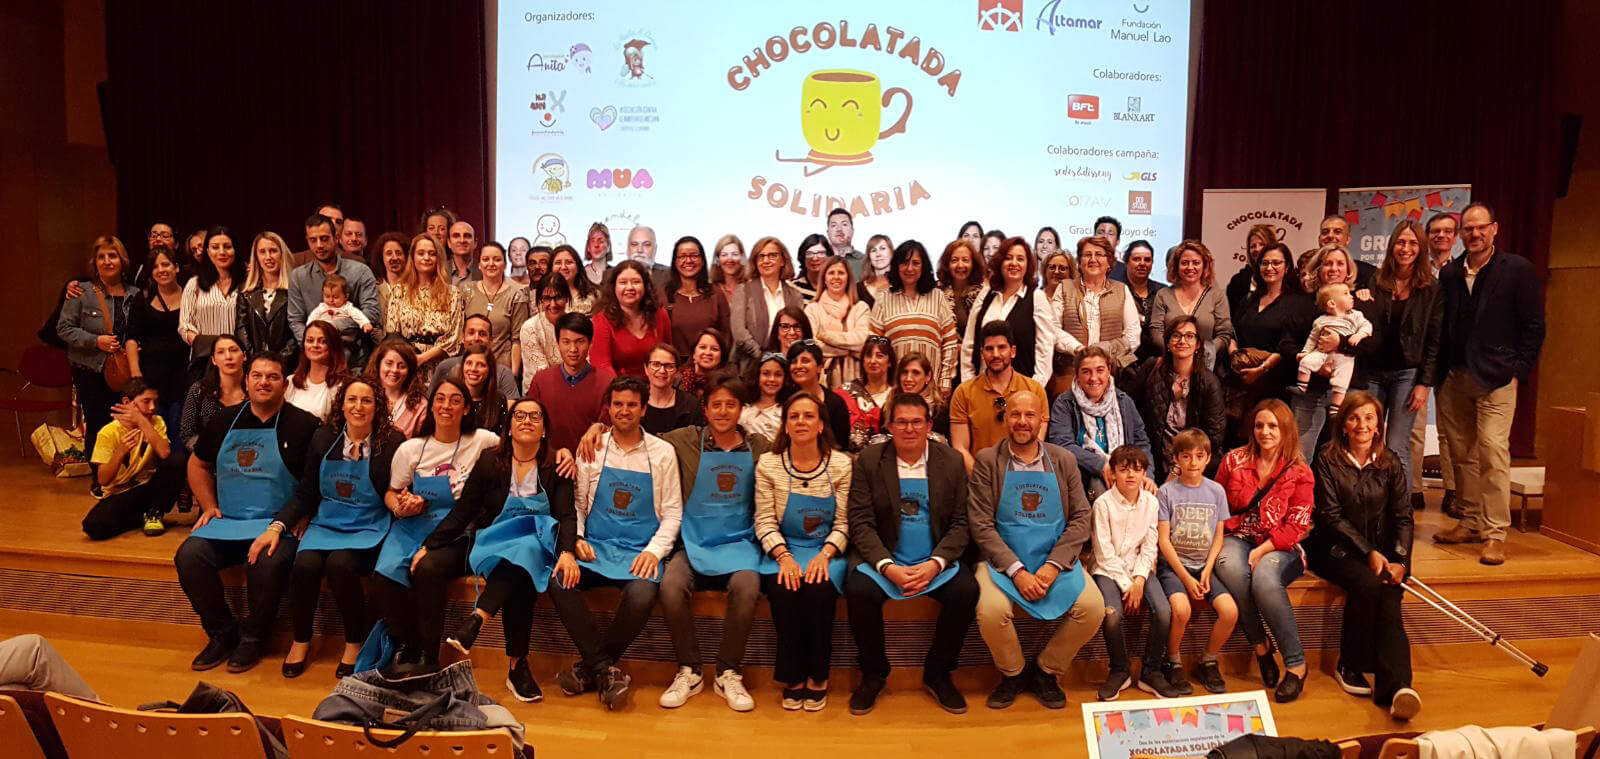 Un año más la Fundación Manuel Lao apoya y participa activamente con la Chocolatada Solidaria